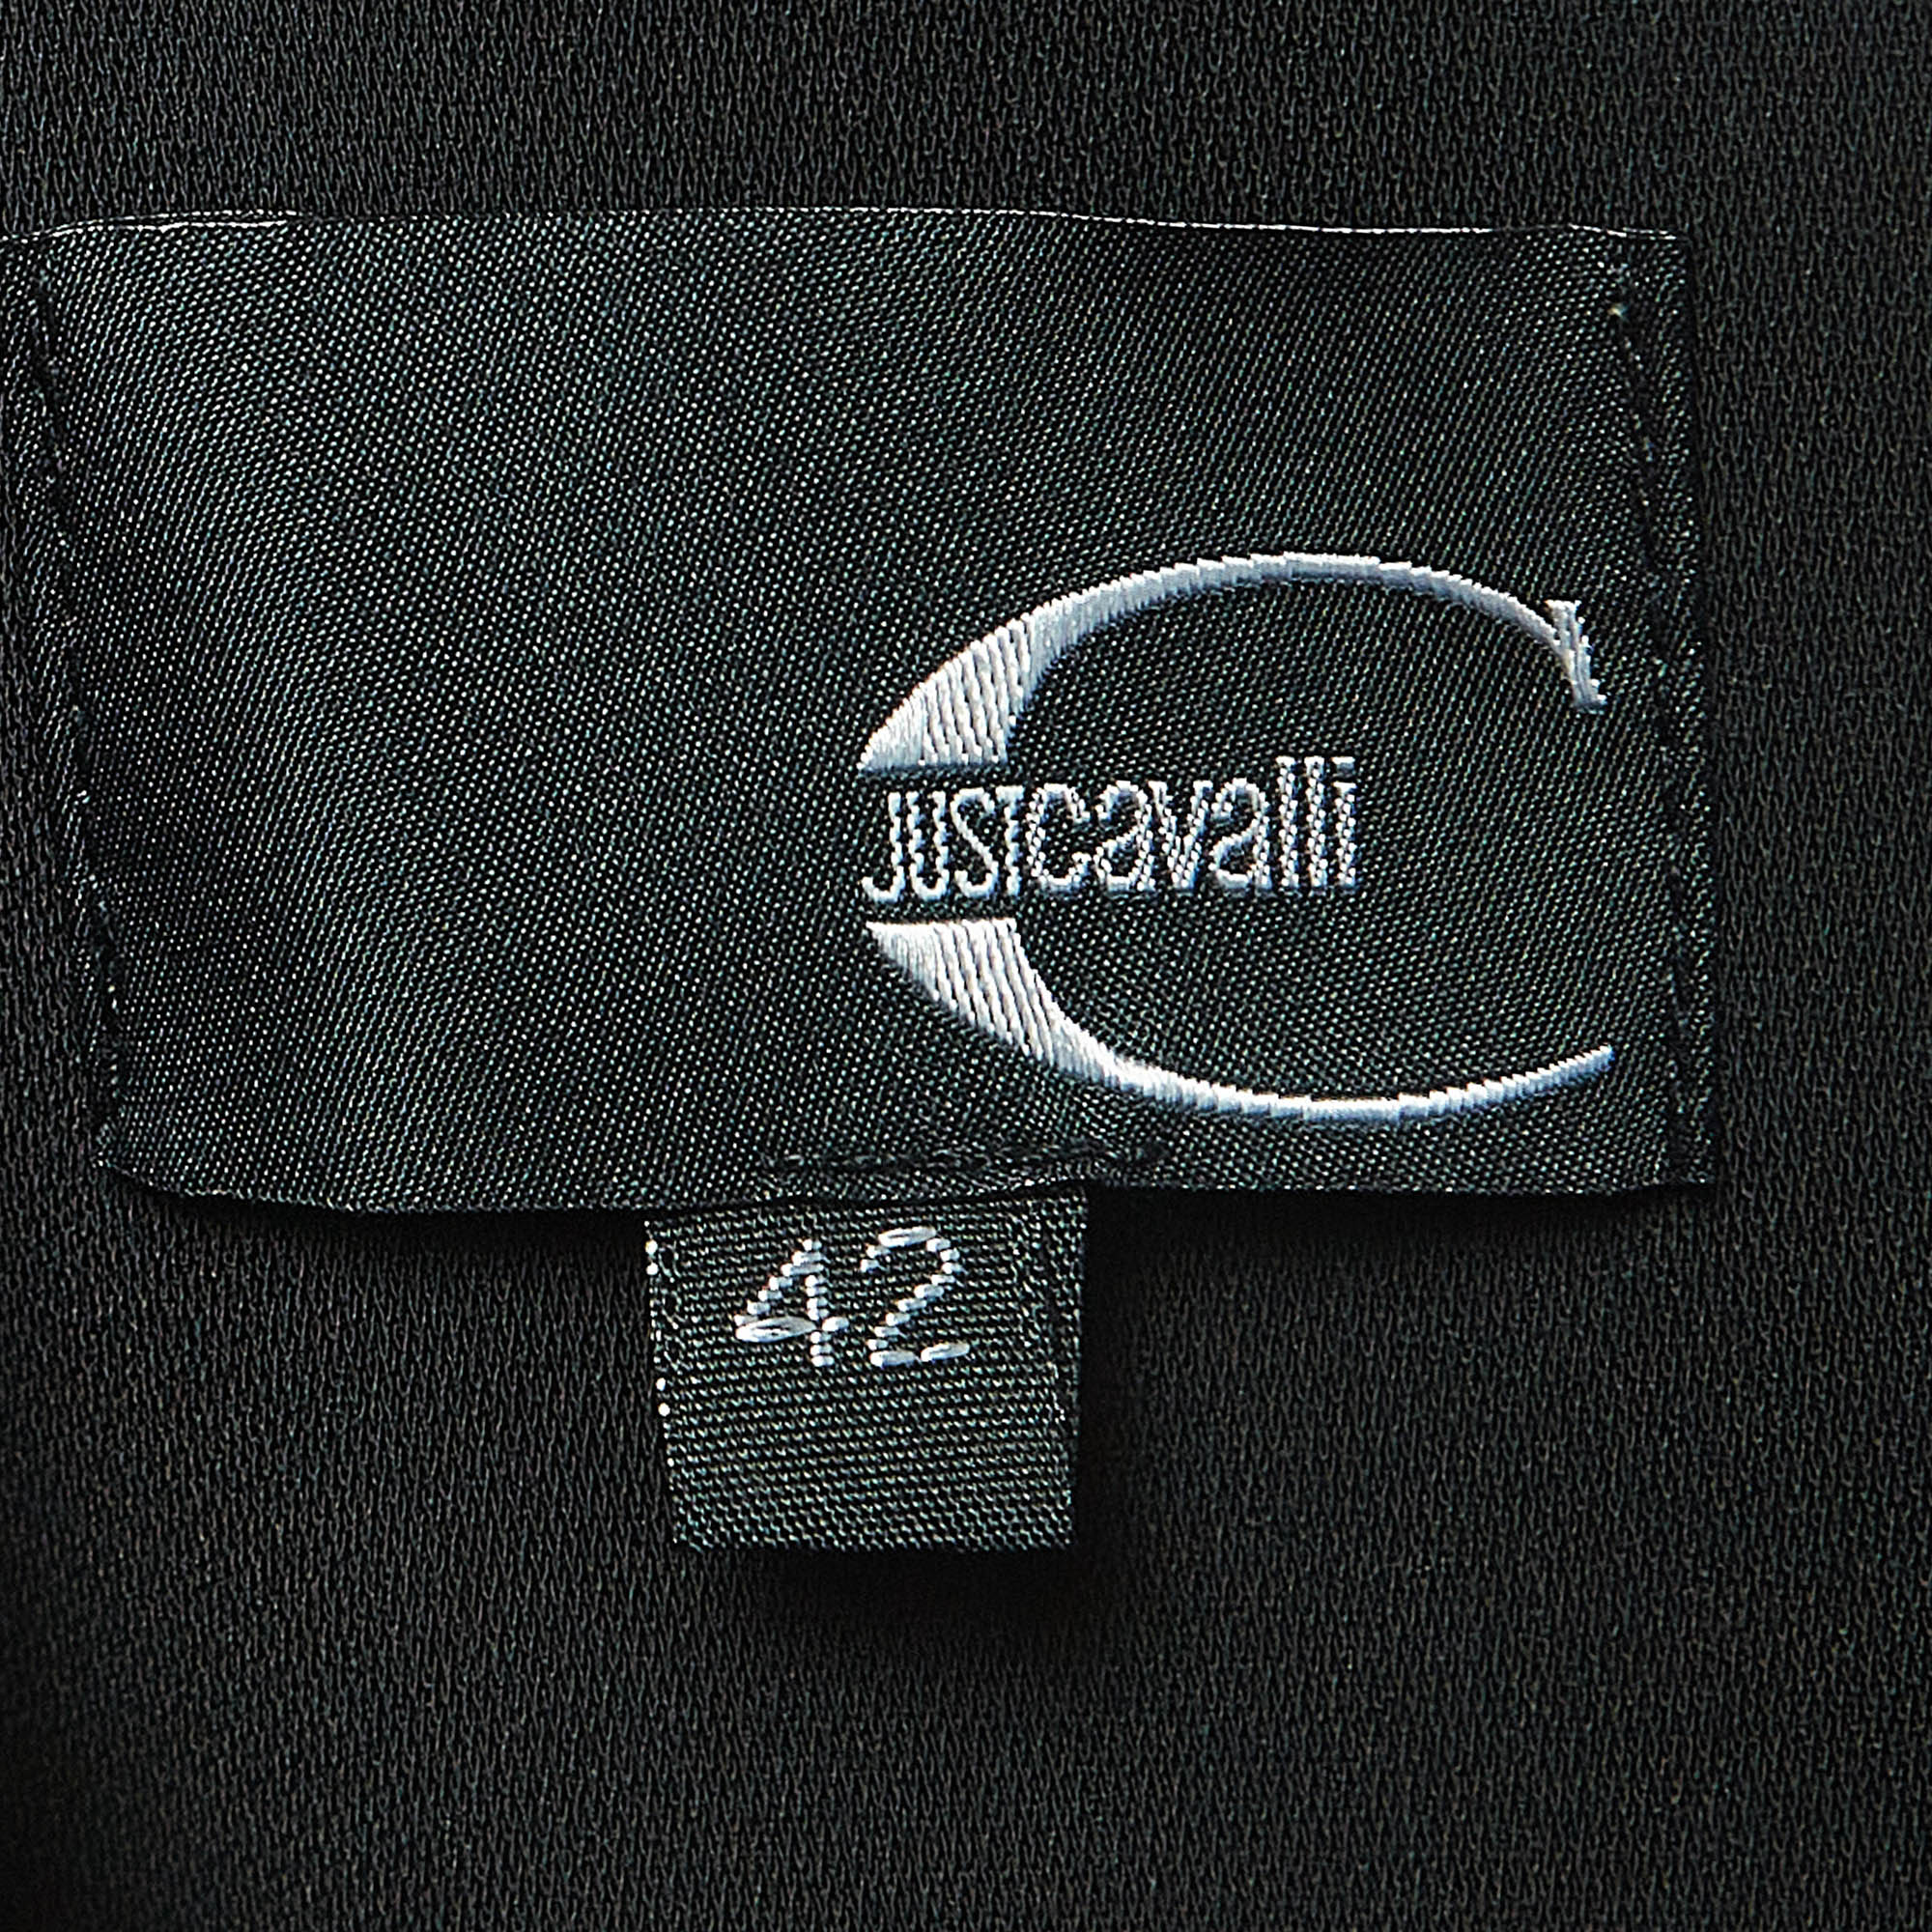 Just Cavalli Black Crepe One-Shoulder Pleated Mini Dress M